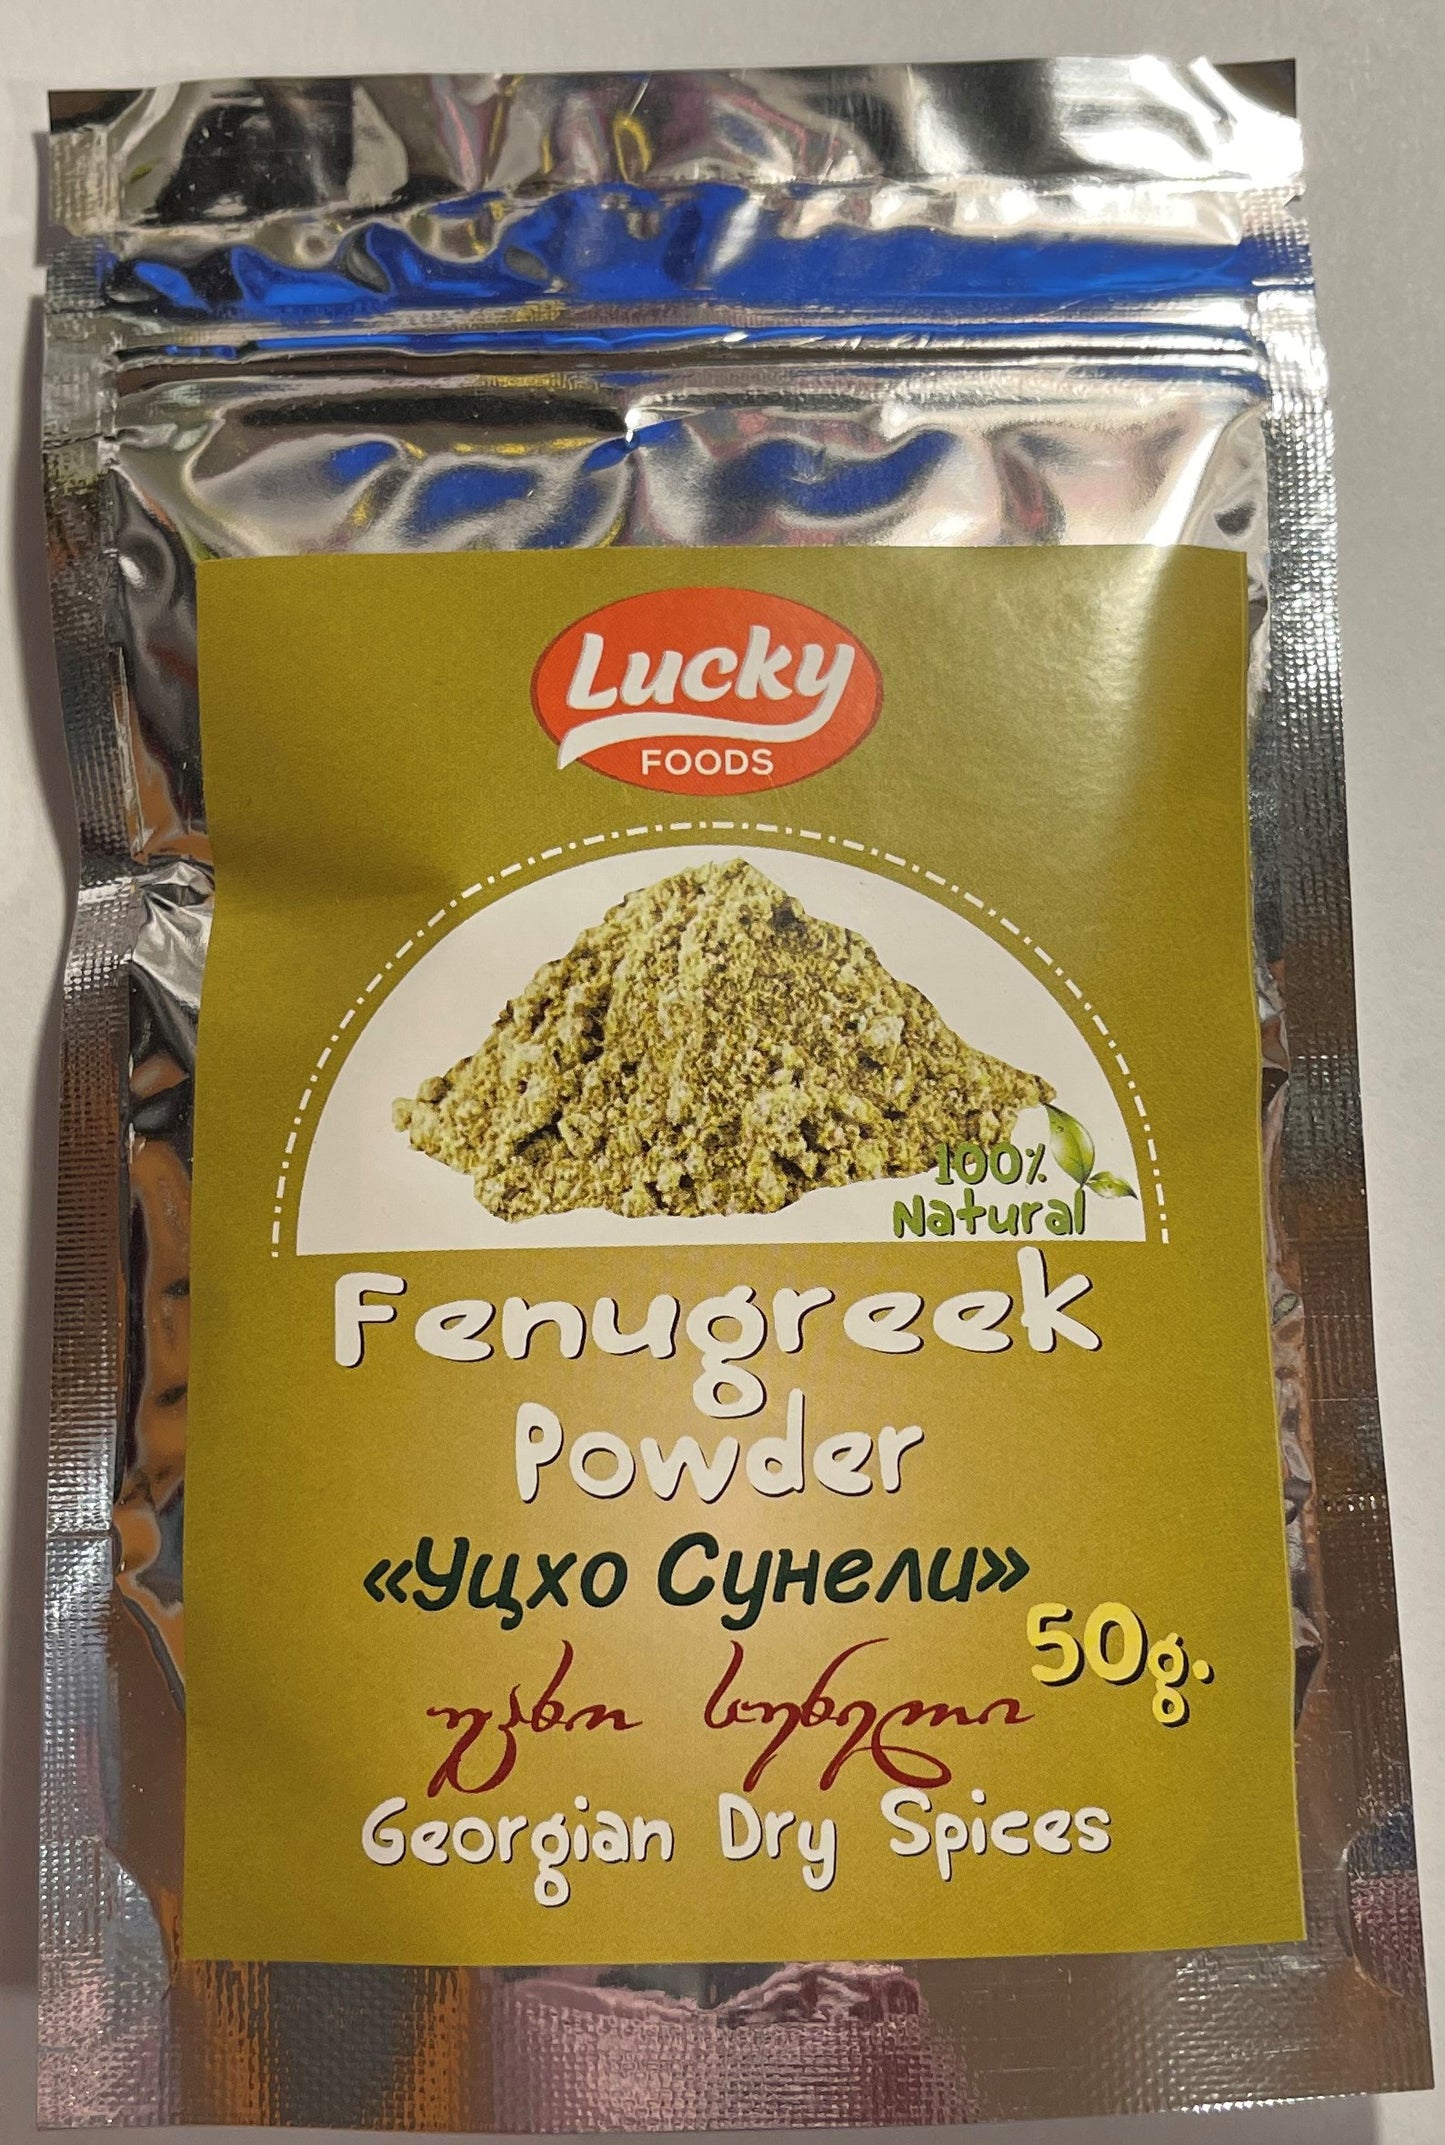 LUCKY FOODS GEORGIAN SPICE FENUGREEK UTSKHO SUNELI 50g